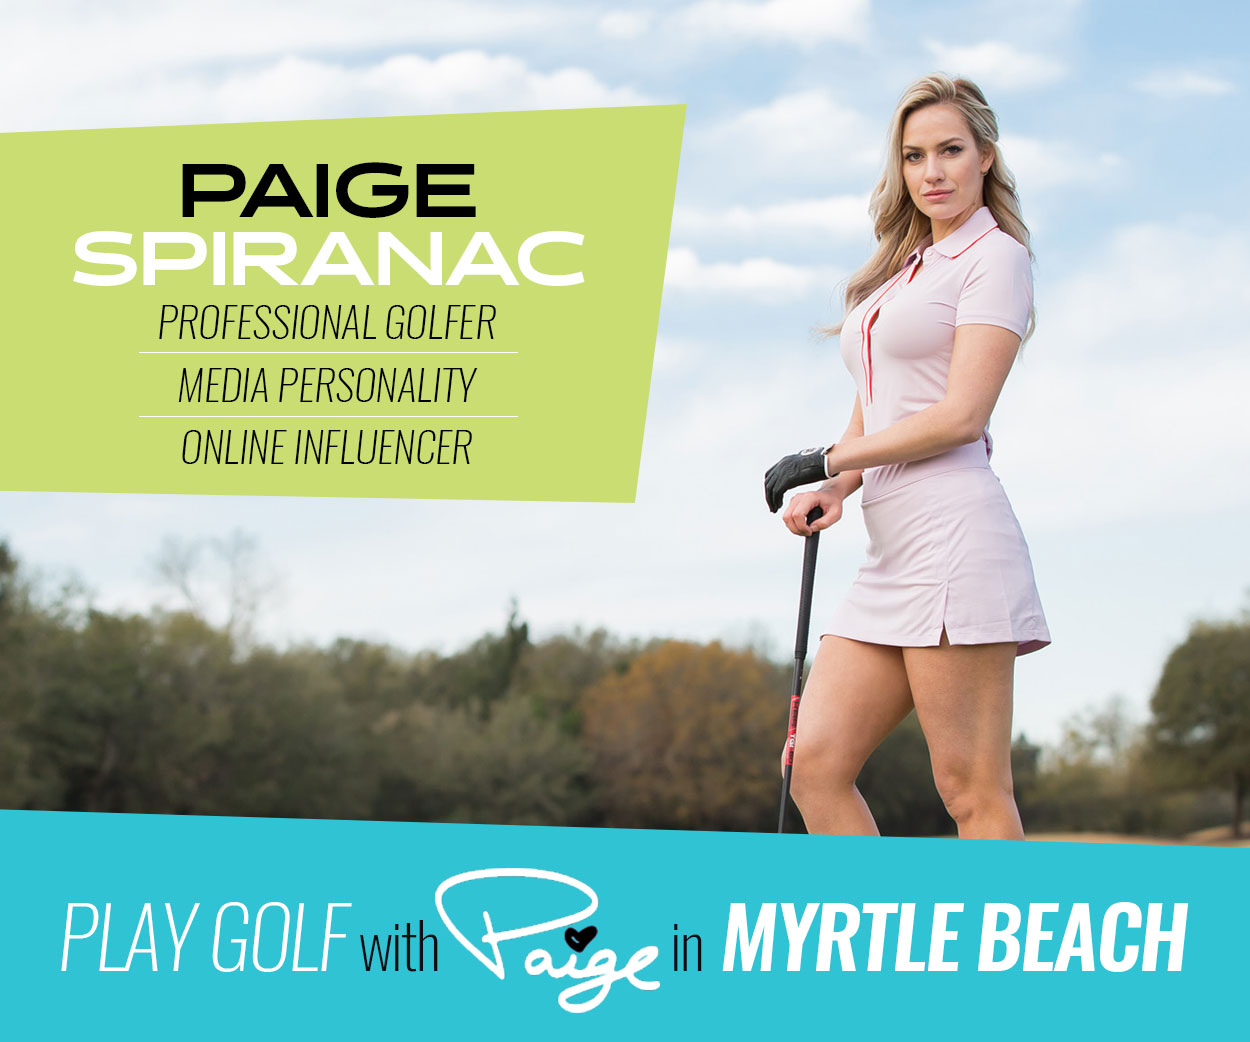 Play Golf with Paige Spiranac in Myrtle Beach Splash